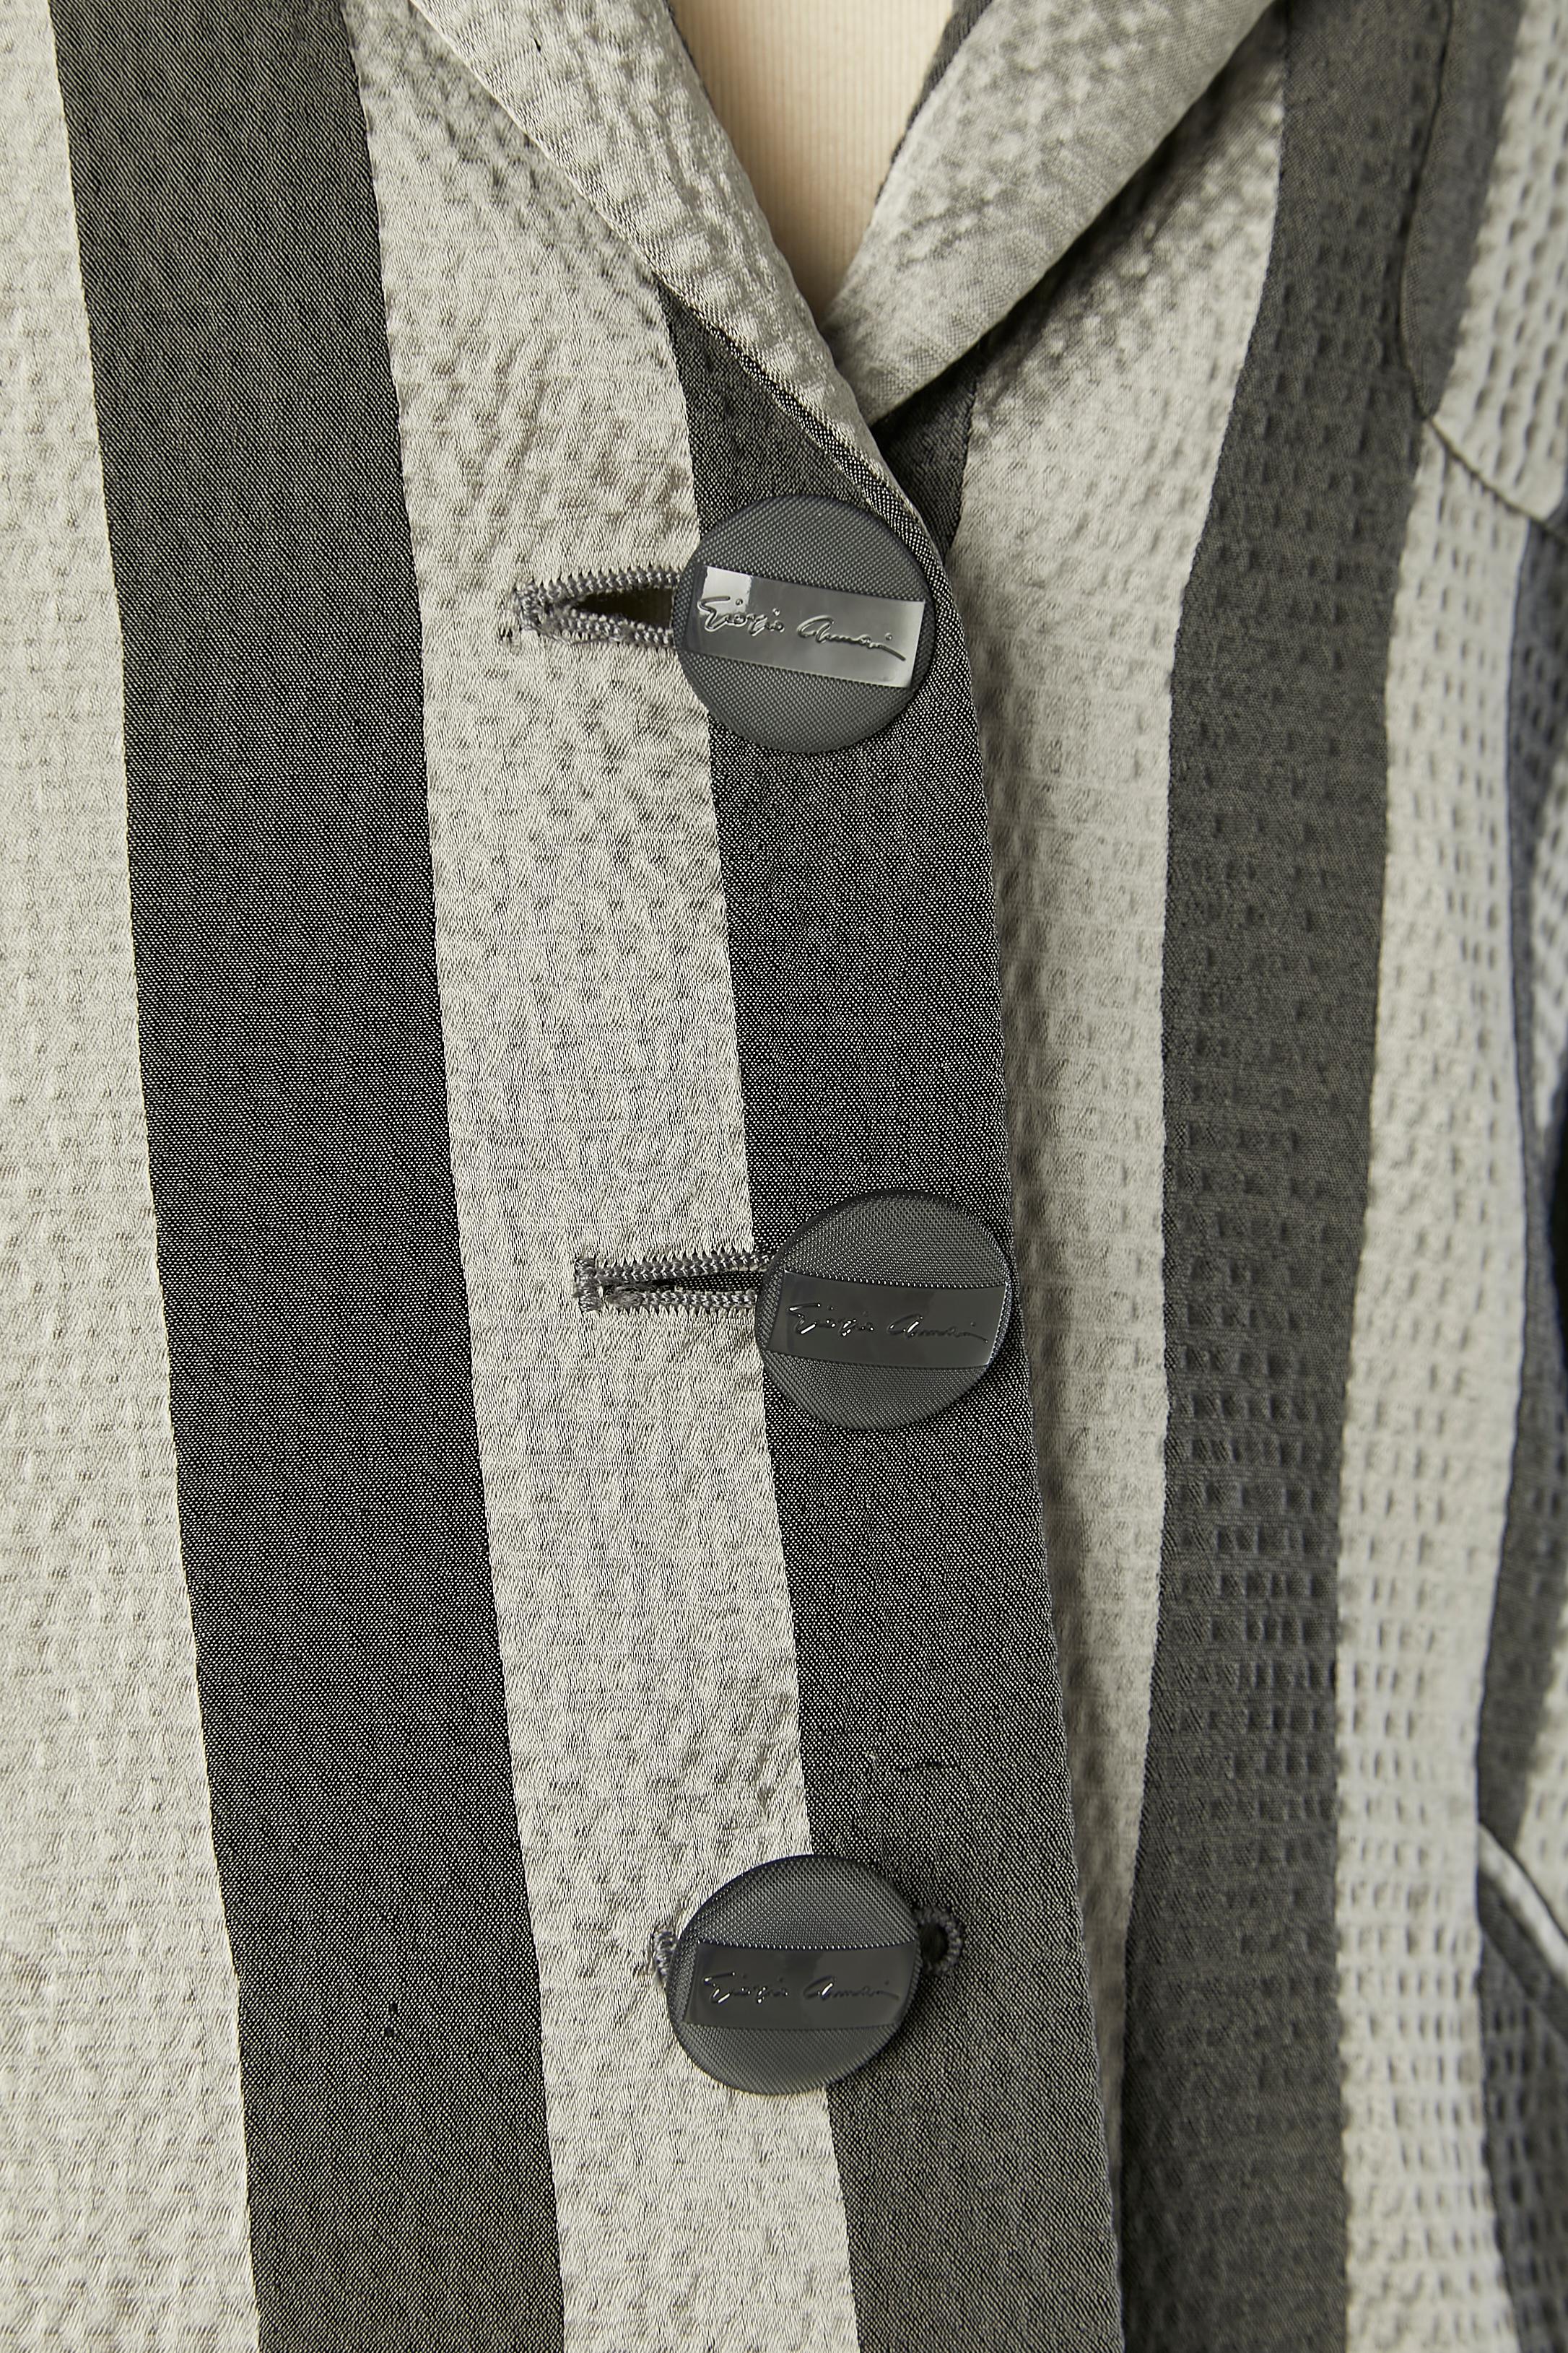 Veste rayée à simple boutonnage et boutons de marque. Composition du tissu principal : 46% rayonne, 45% coton, 9% acrylique. Doublure : acétate et rayonne. Pad d'épaule. 2 fentes sur le côté du bas du dos.
TAILLE 40 (It) 36 (Fr) 6 (Us) 